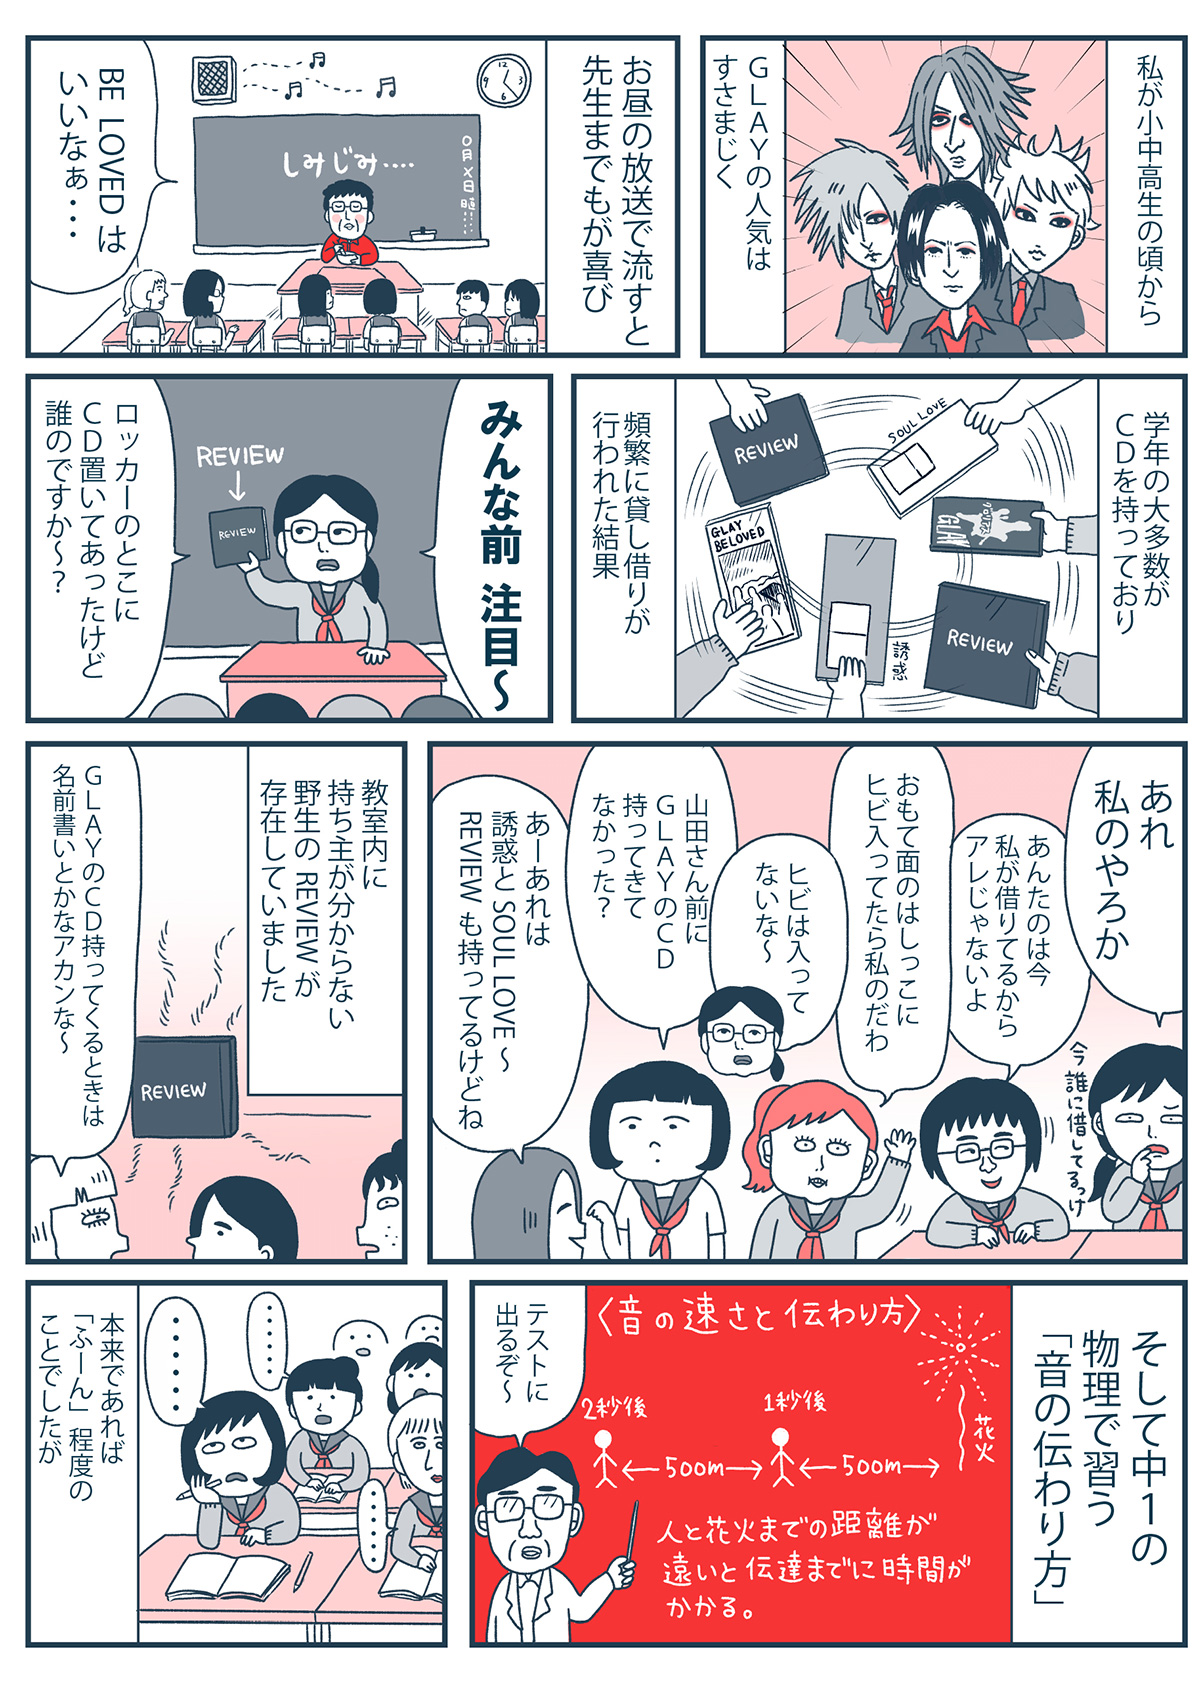 漫画 Glayはv系の良心 人気v系漫画家が描く Glayが聖人と呼ばれる訳 Yahoo Japan